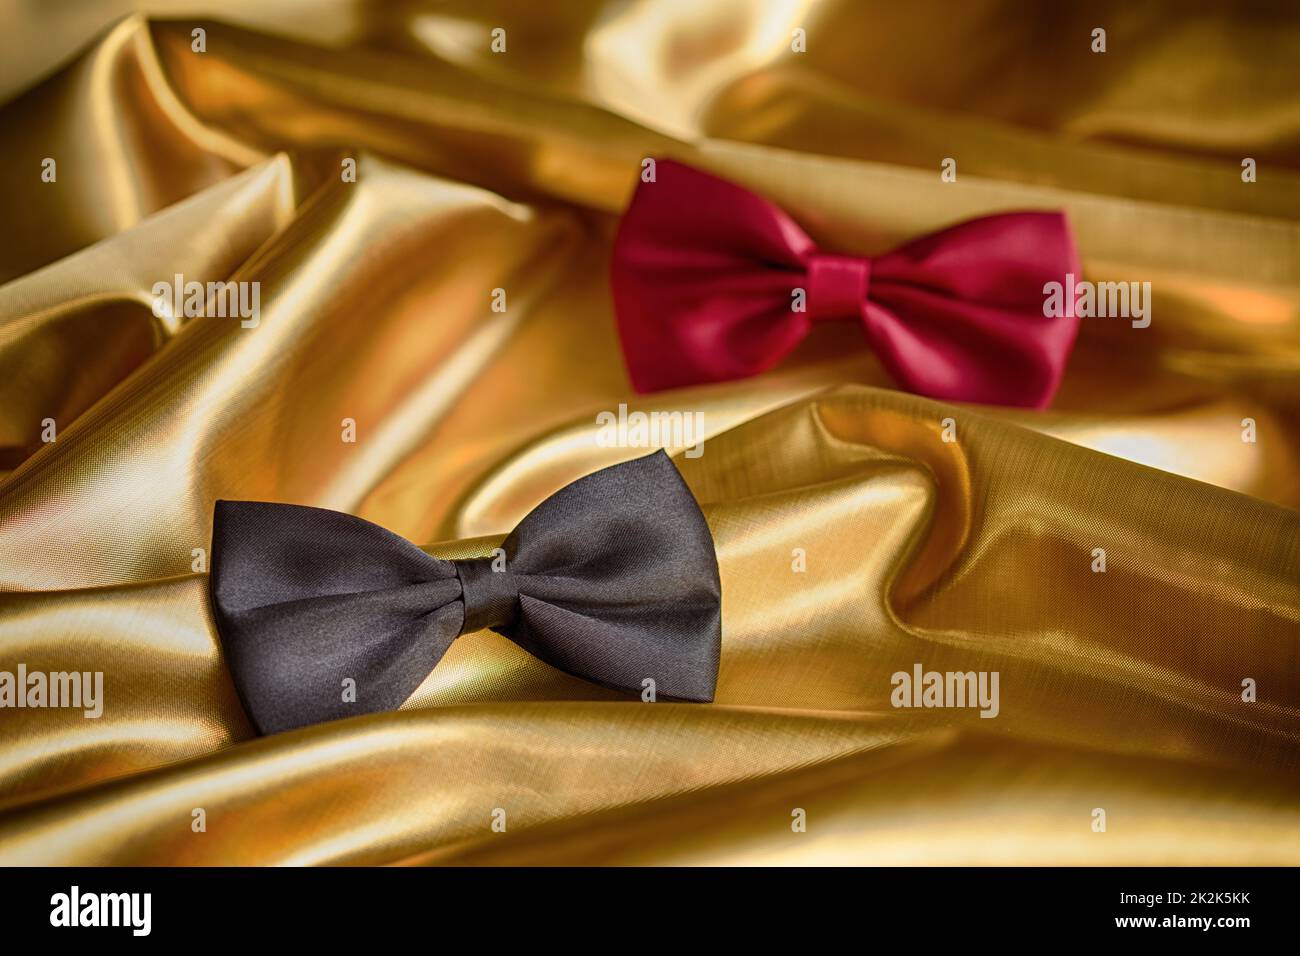 Cravatte nere immagini e fotografie stock ad alta risoluzione - Alamy